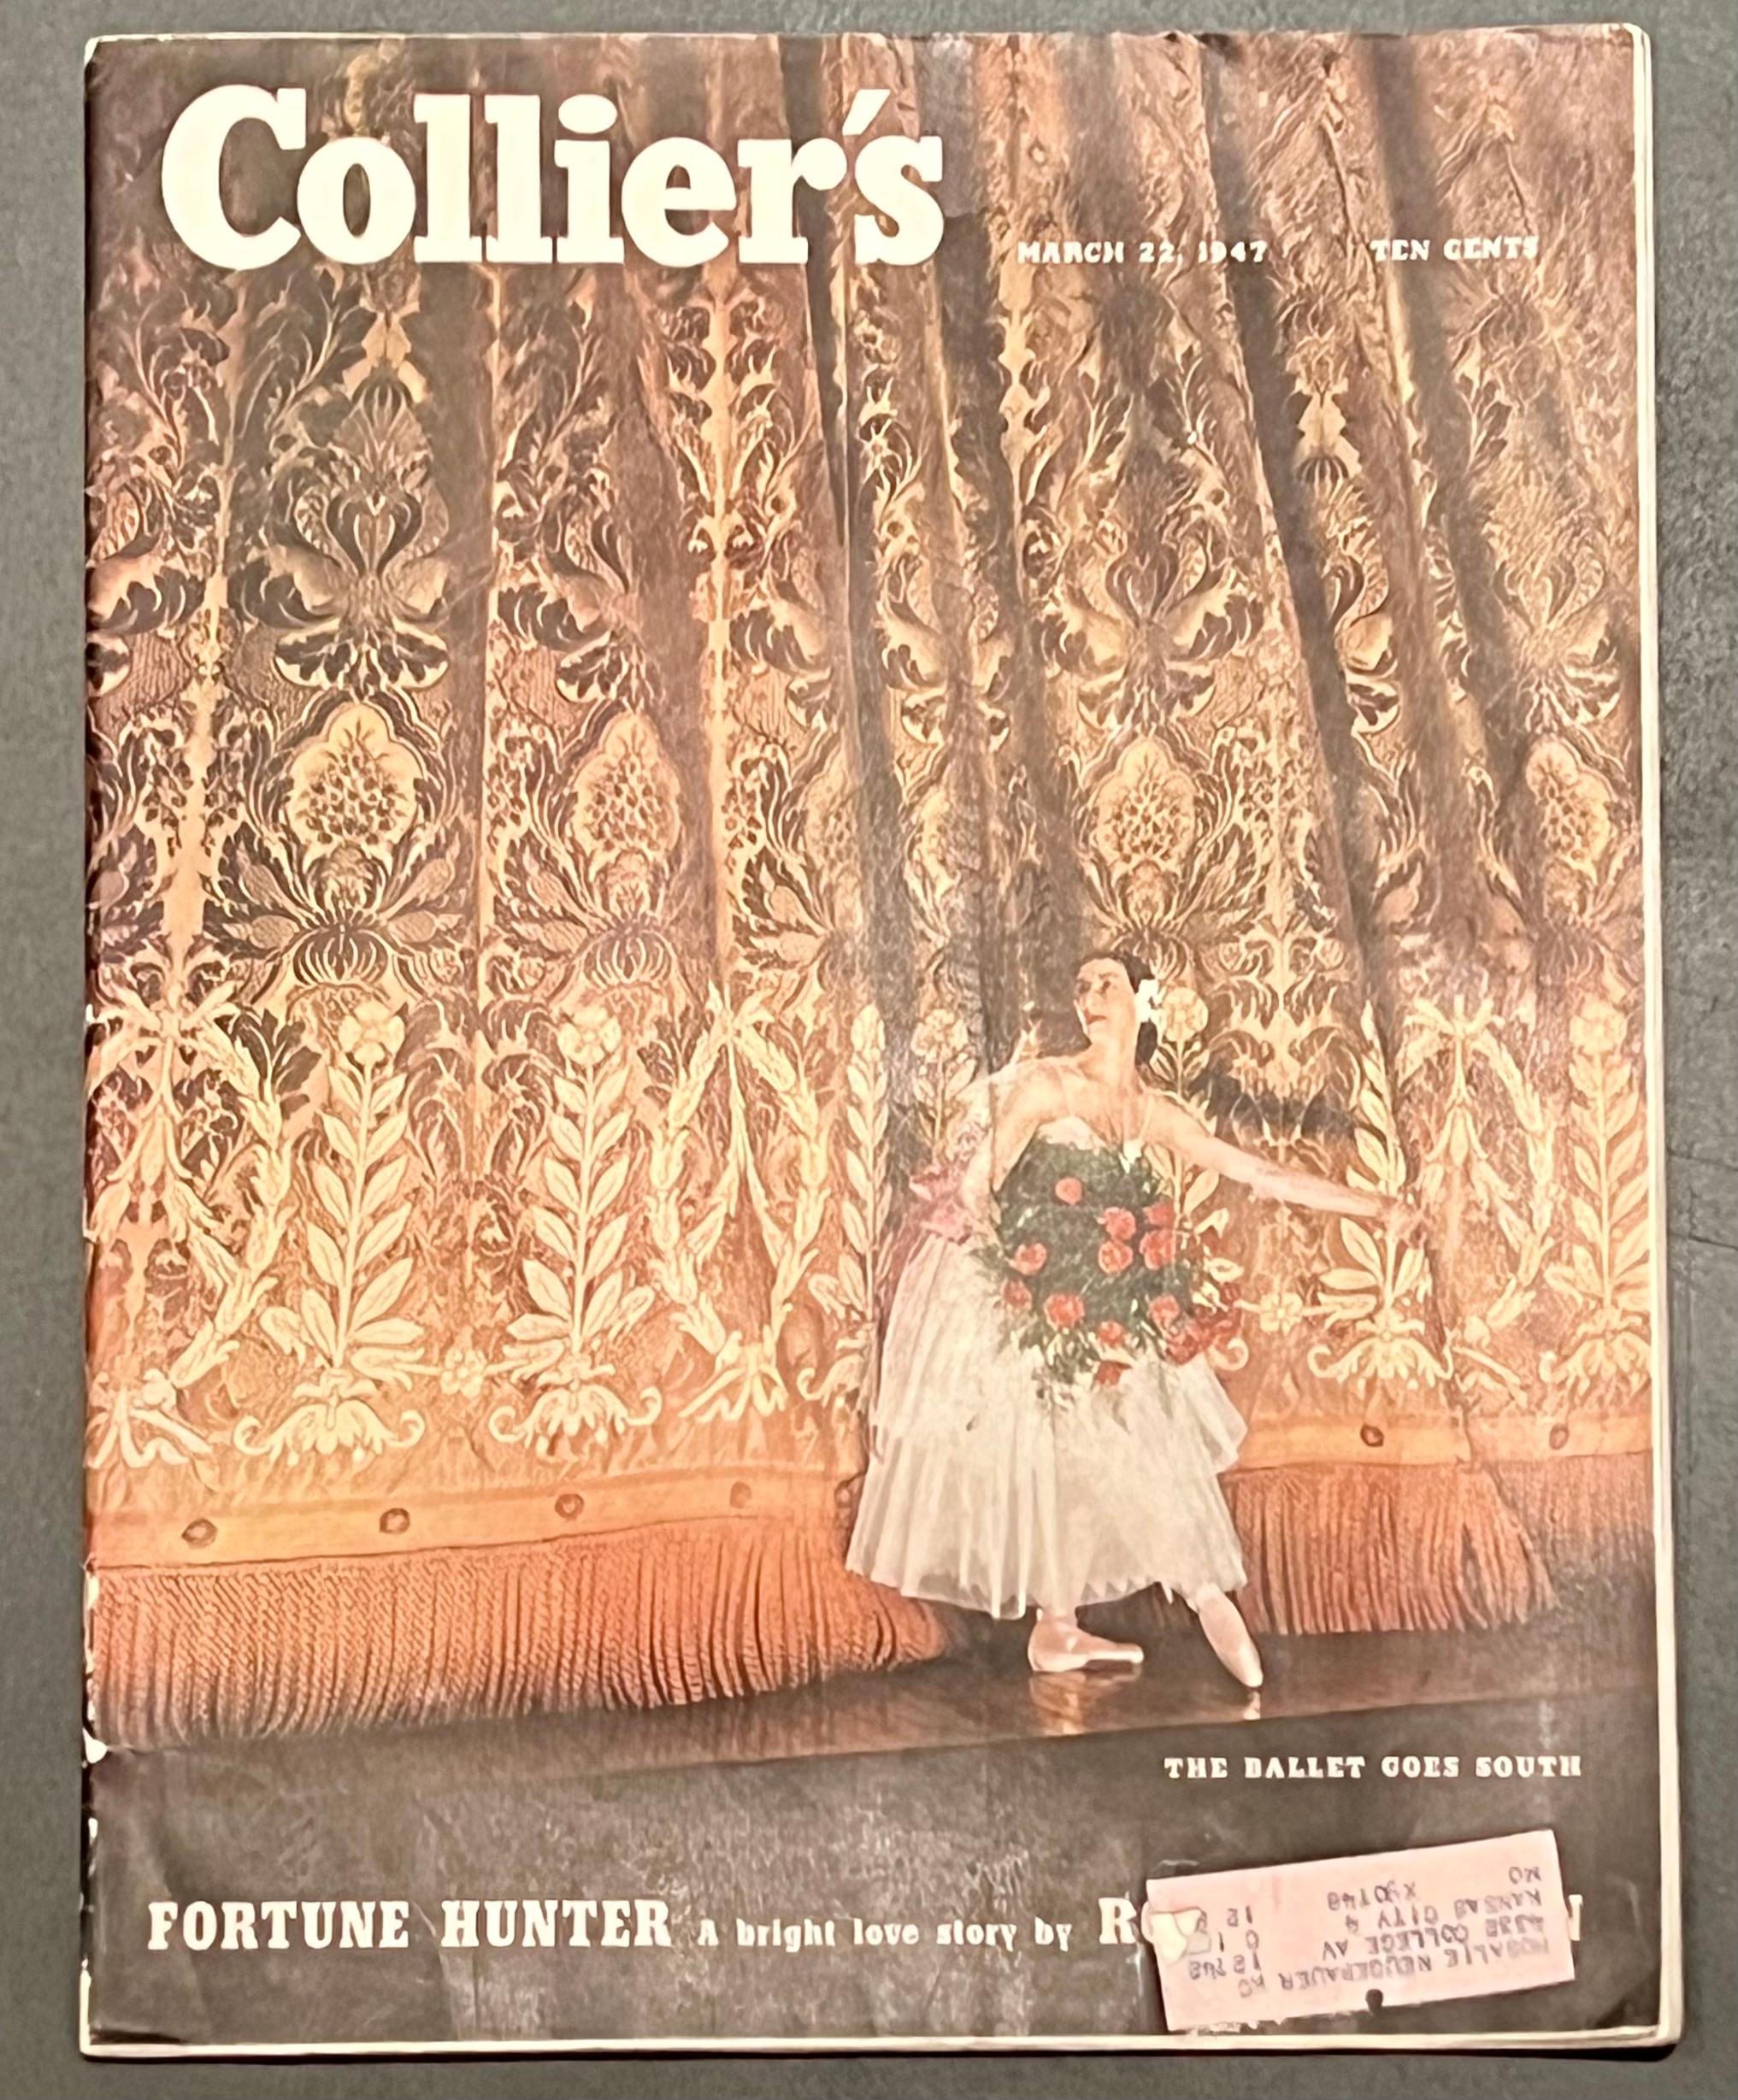 Colliers Magazine 1947 Amerikanische Szene Sozialrealismus Moderne Familien im Schnee, Colliers Magazine (Amerikanischer Realismus), Painting, von Katherine Wiggins